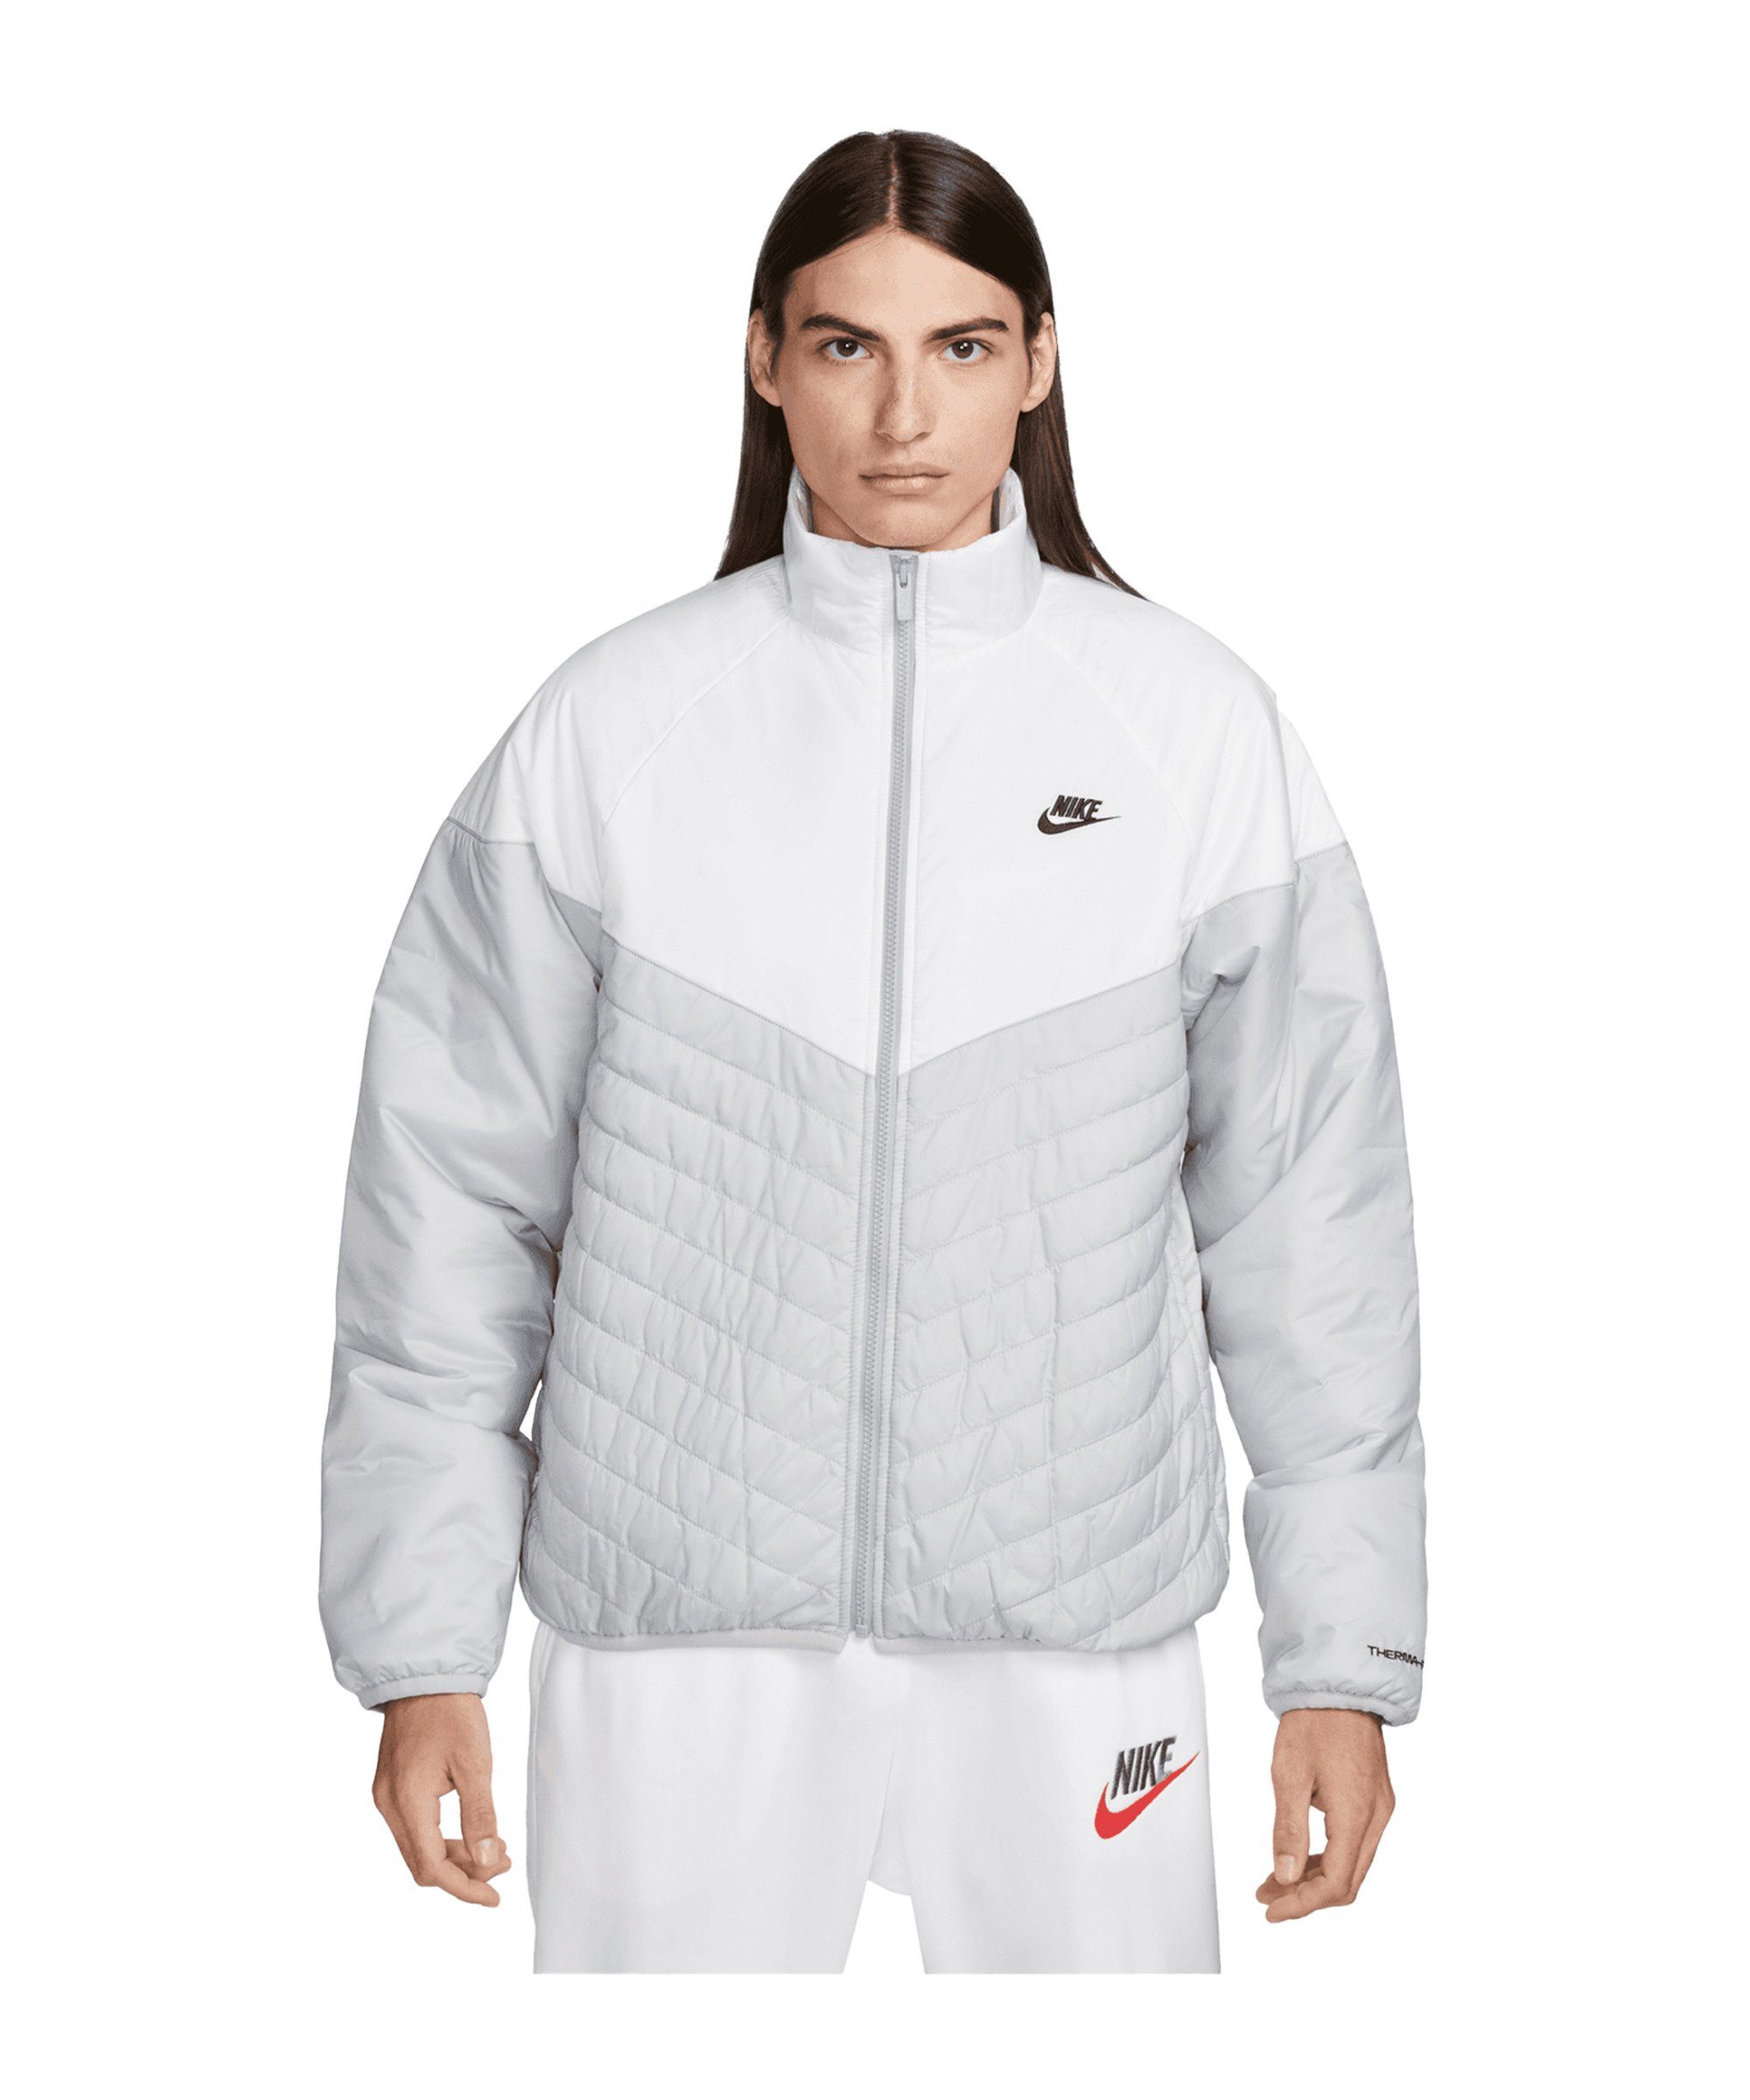 Windrunner Sportswear Nike grauweissschwarz Sweatjacke Puffer Storm-FIT